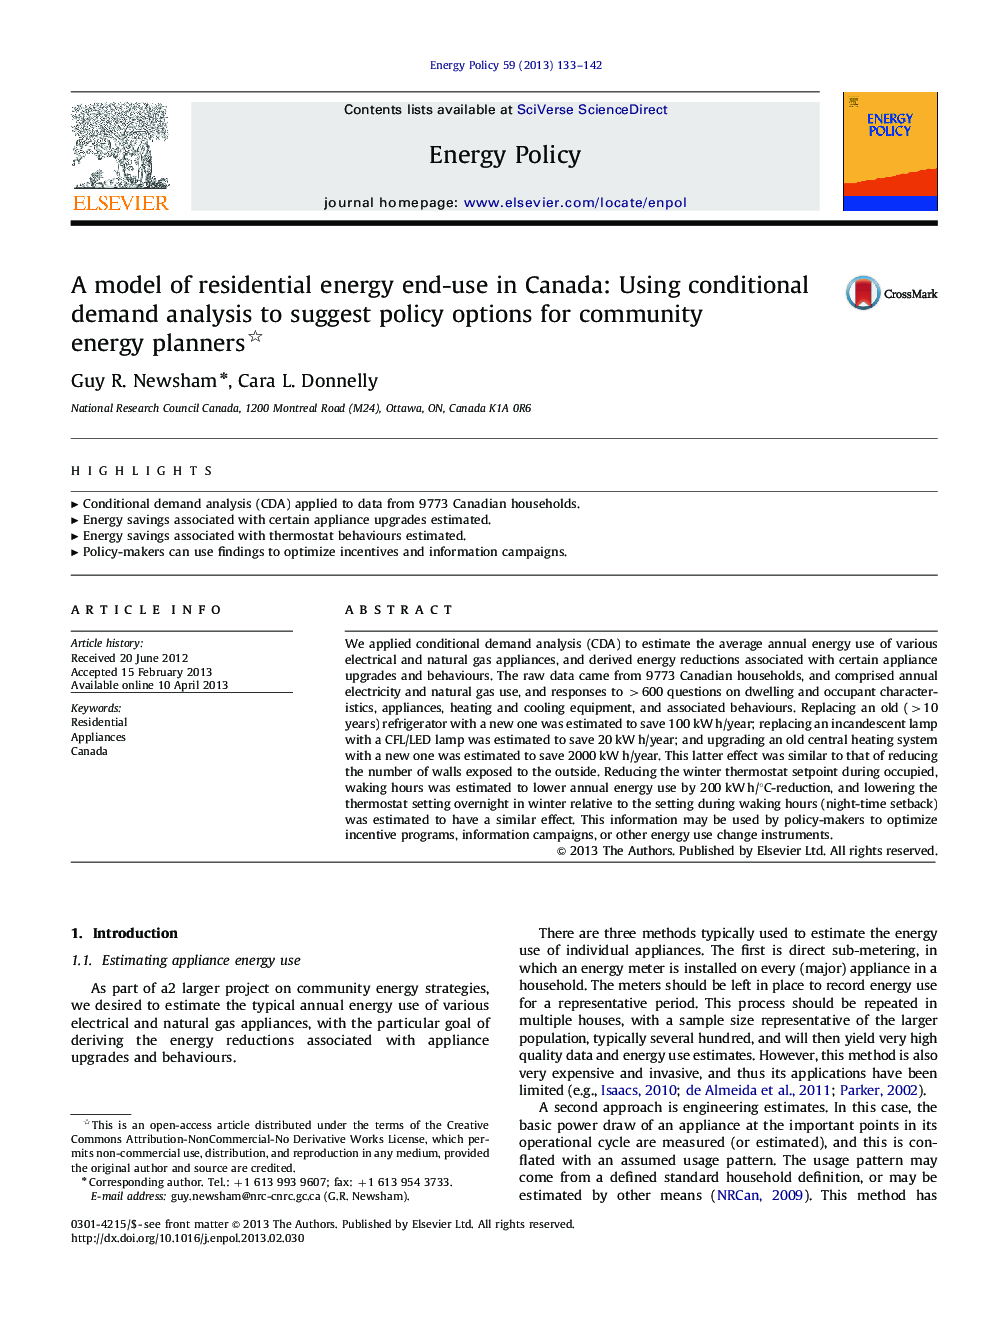 مدل مصرف انرژی پایدار مسکونی در کانادا: با استفاده از تجزیه و تحلیل تقاضای مشروط به پیشنهاد گزینه های سیاست گذاری برای برنامه ریزان انرژی اجتماعی 